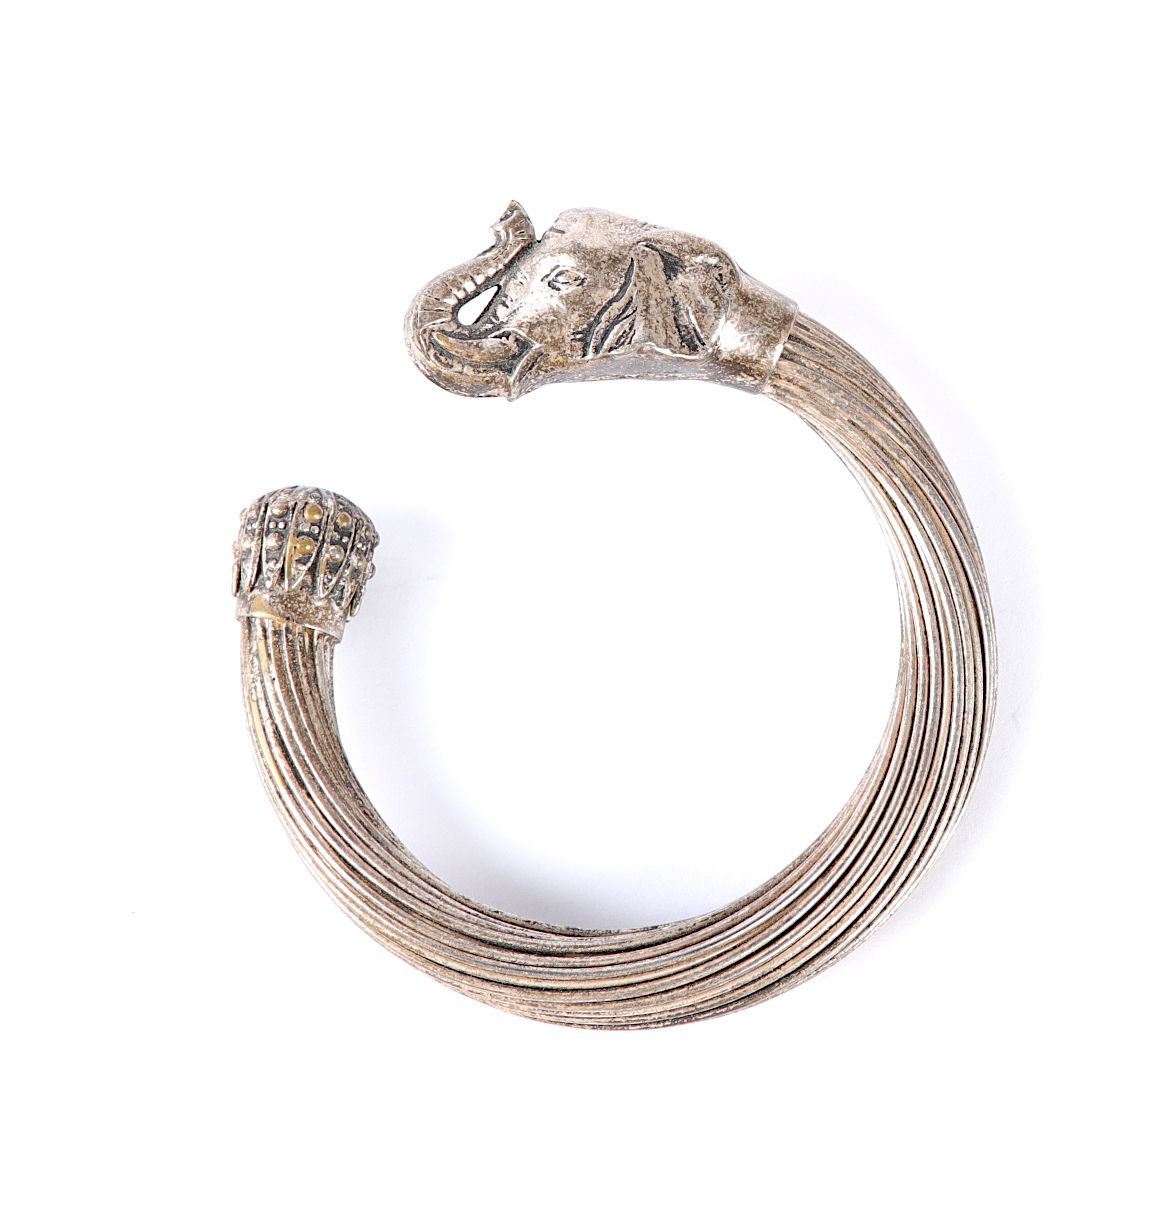 Null Bracciale in argento, filigrana, testa di elefante. Peso: 65 g.